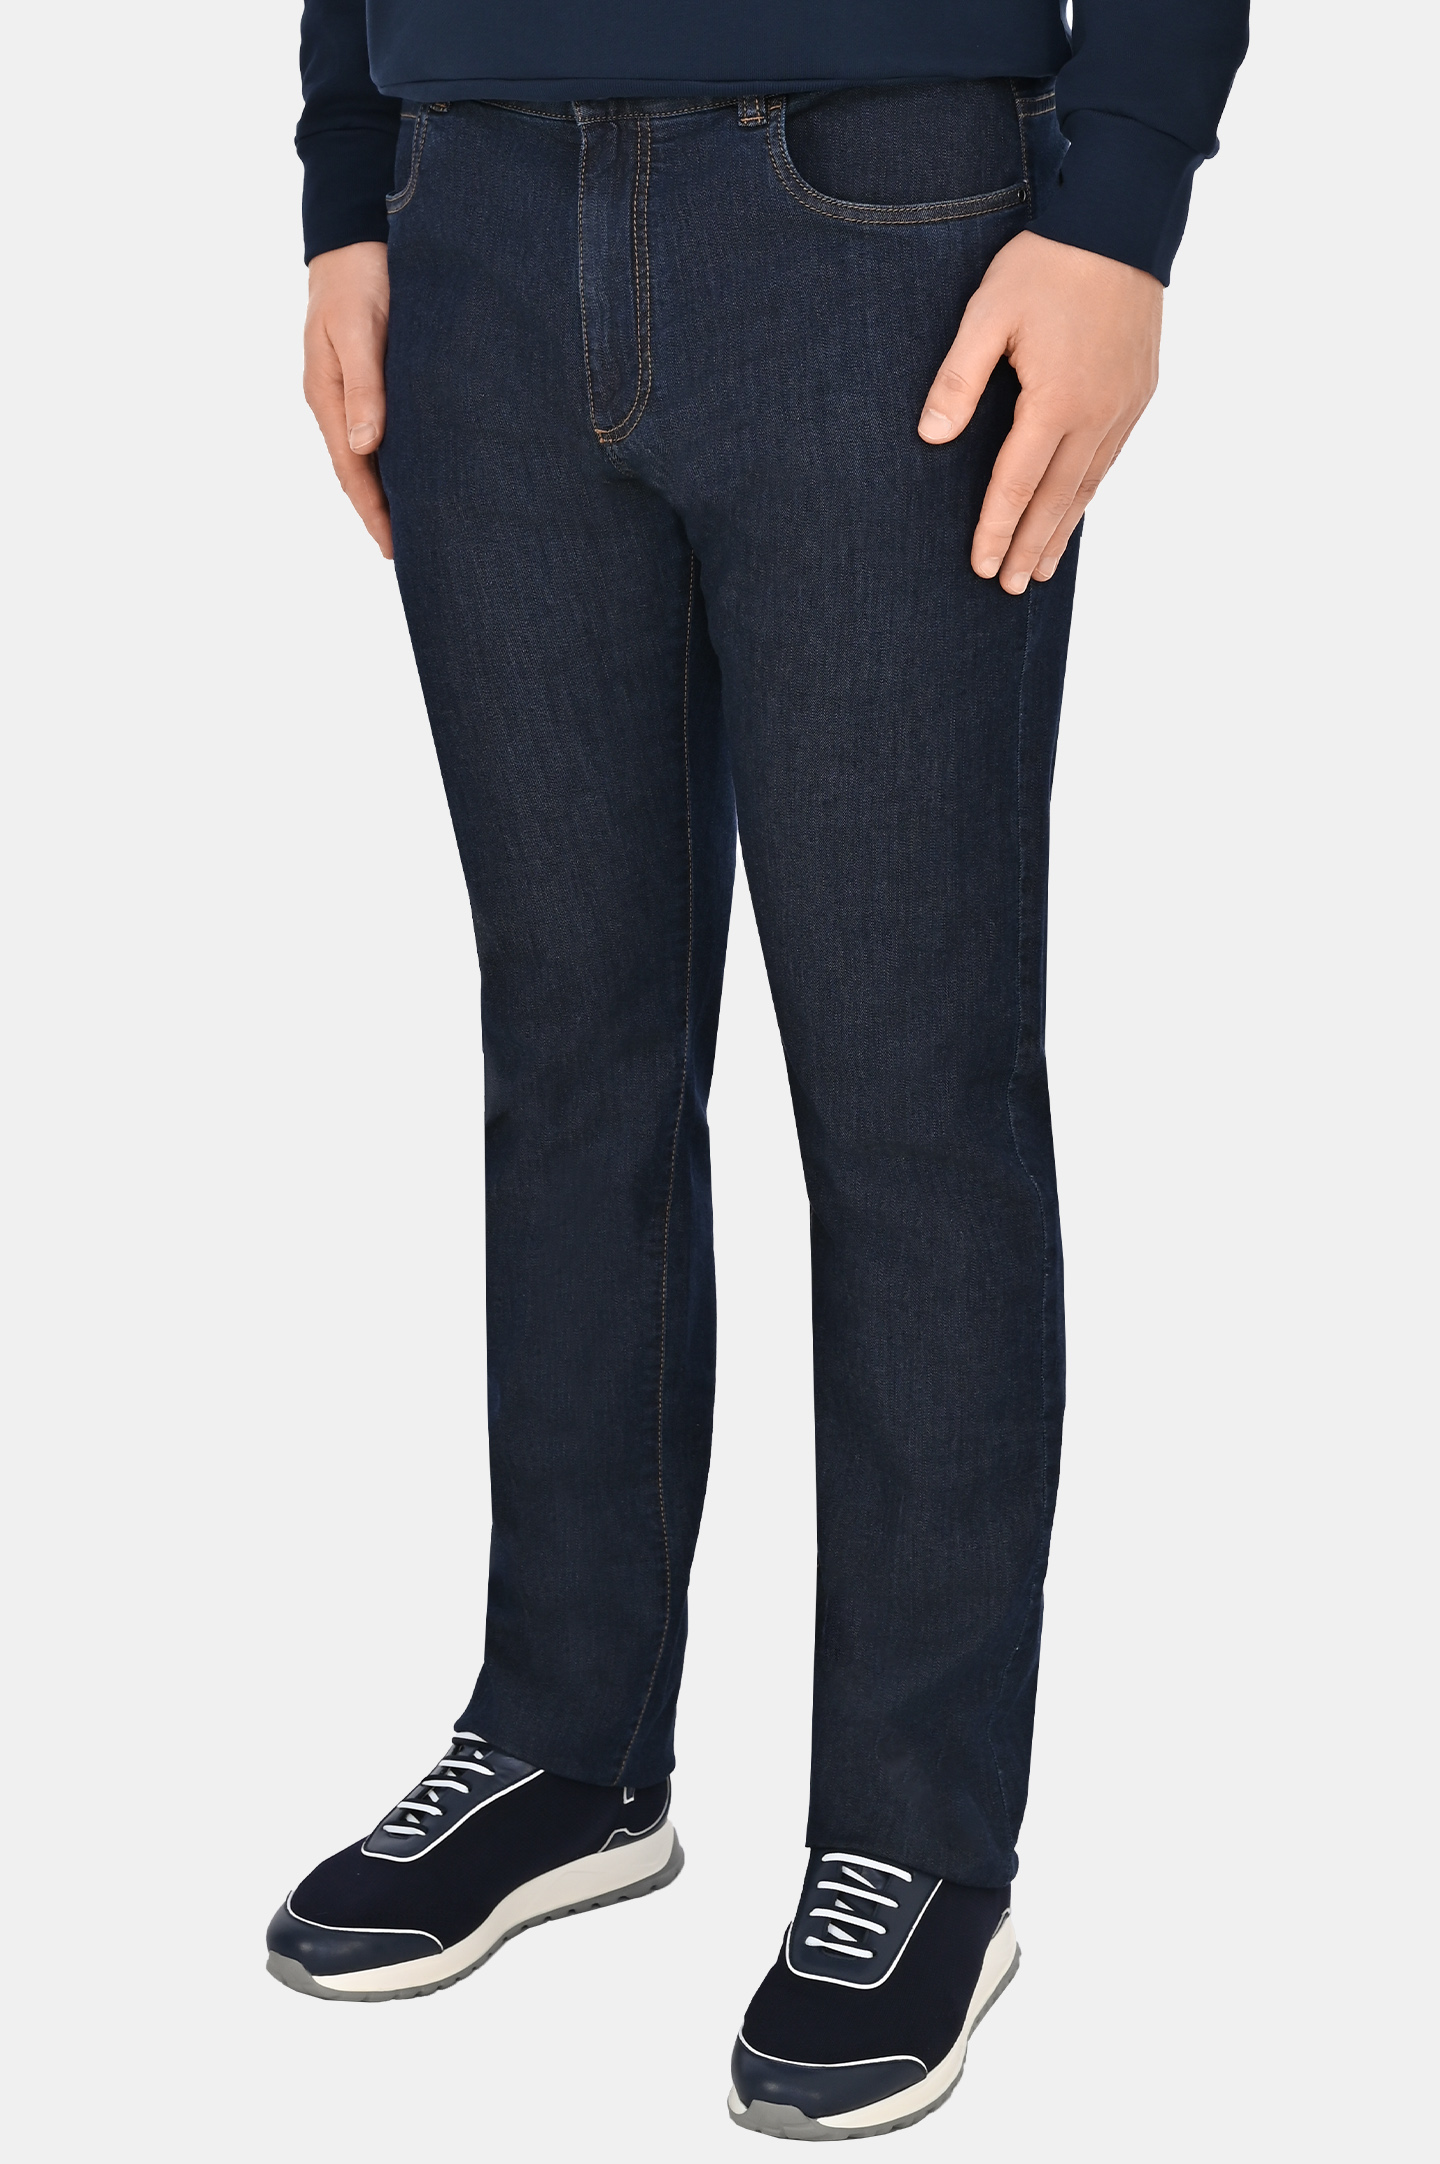 Прямые базовые джинсы CANALI PD00400 91700, цвет: Темно-синий, Мужской